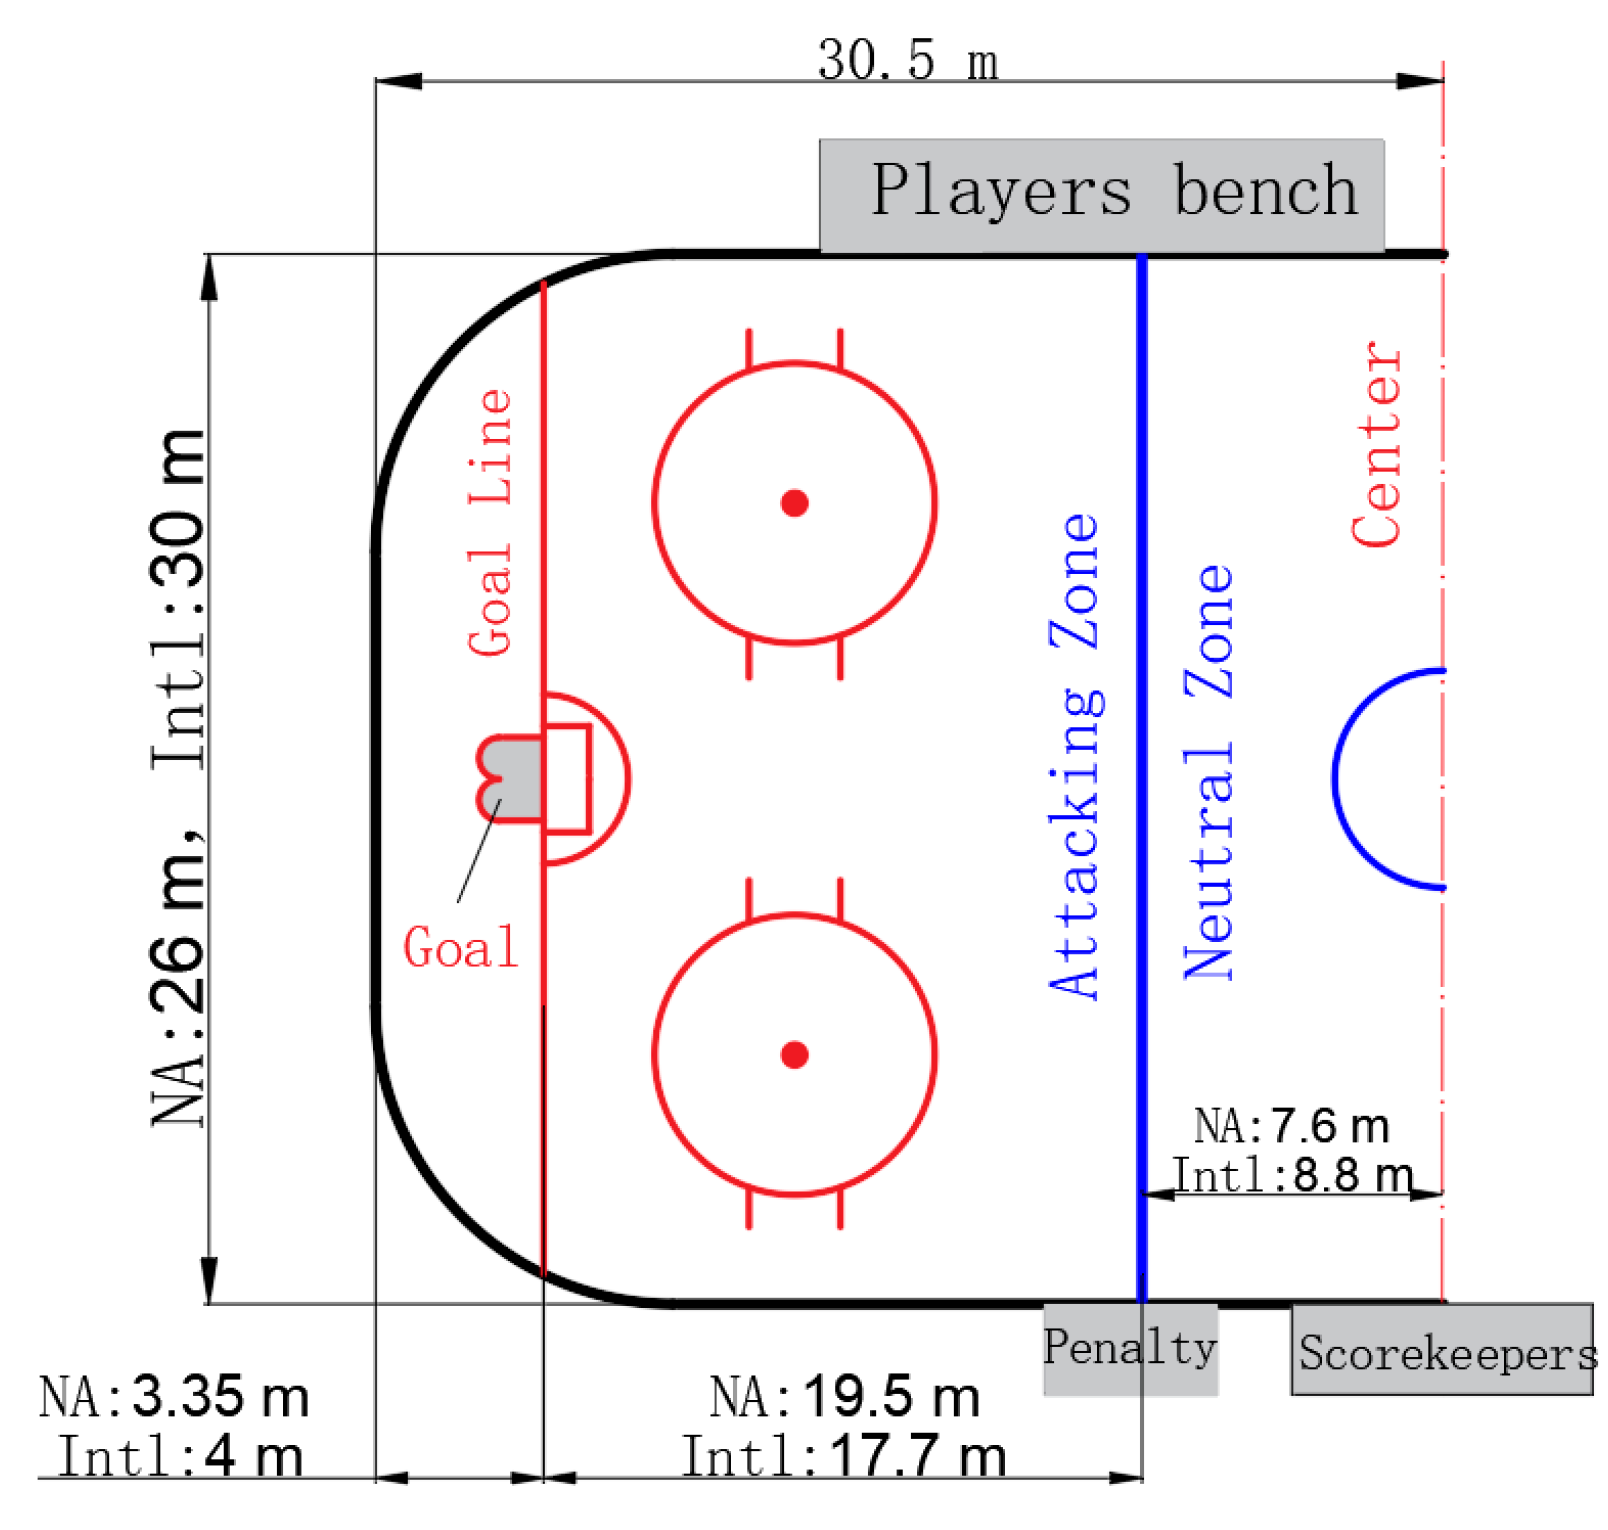 nhl hockey rink dimensions